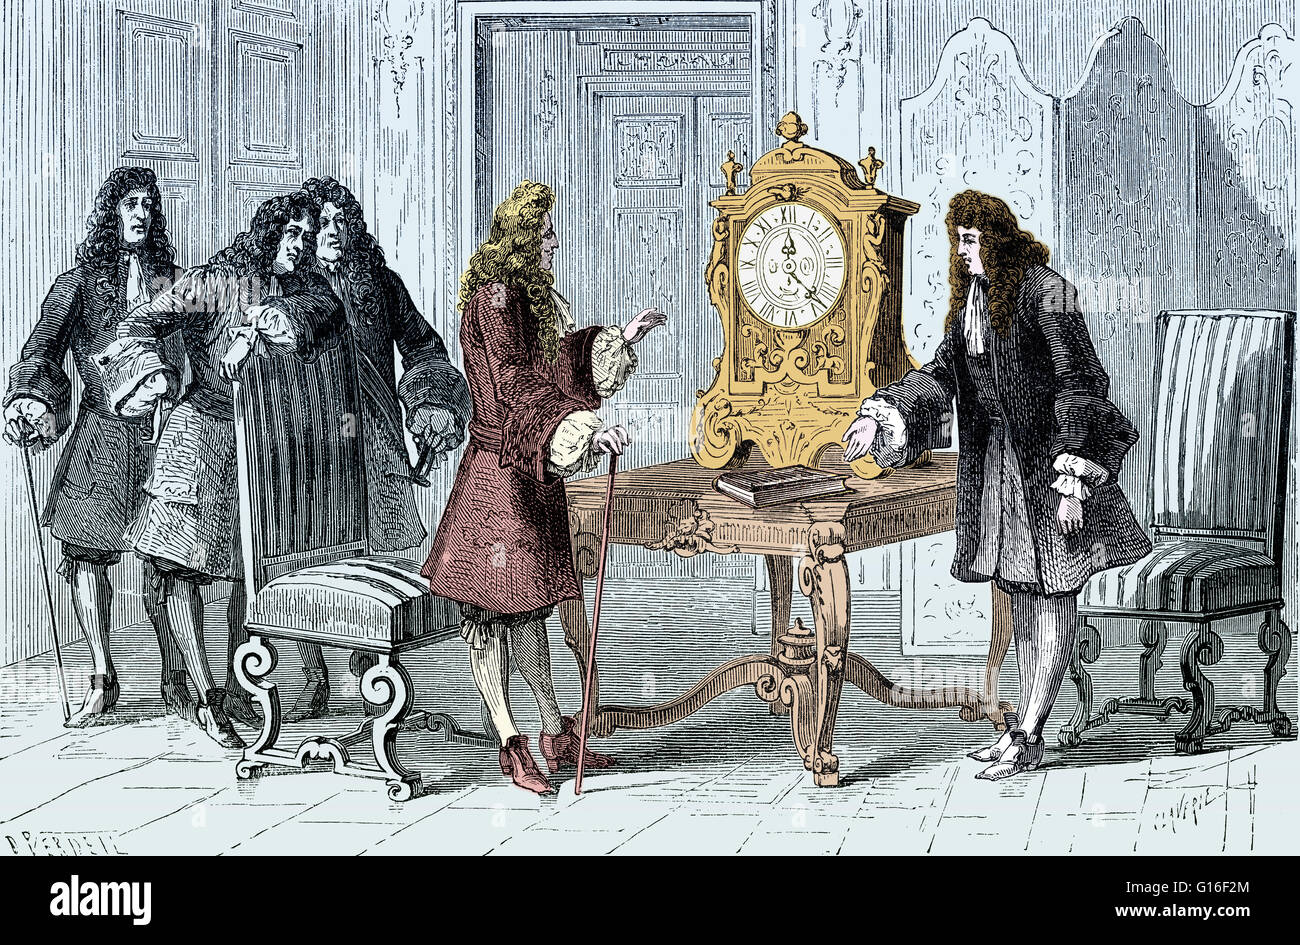 Huygens présente son horloge à pendule de Louis XIV. Christiaan Huygens (14 avril 1629 - 8 juillet 1695) était un mathématicien, astronome néerlandais, physicien, horloger, probabiliste et scientifique. On se souvient d'Huygens